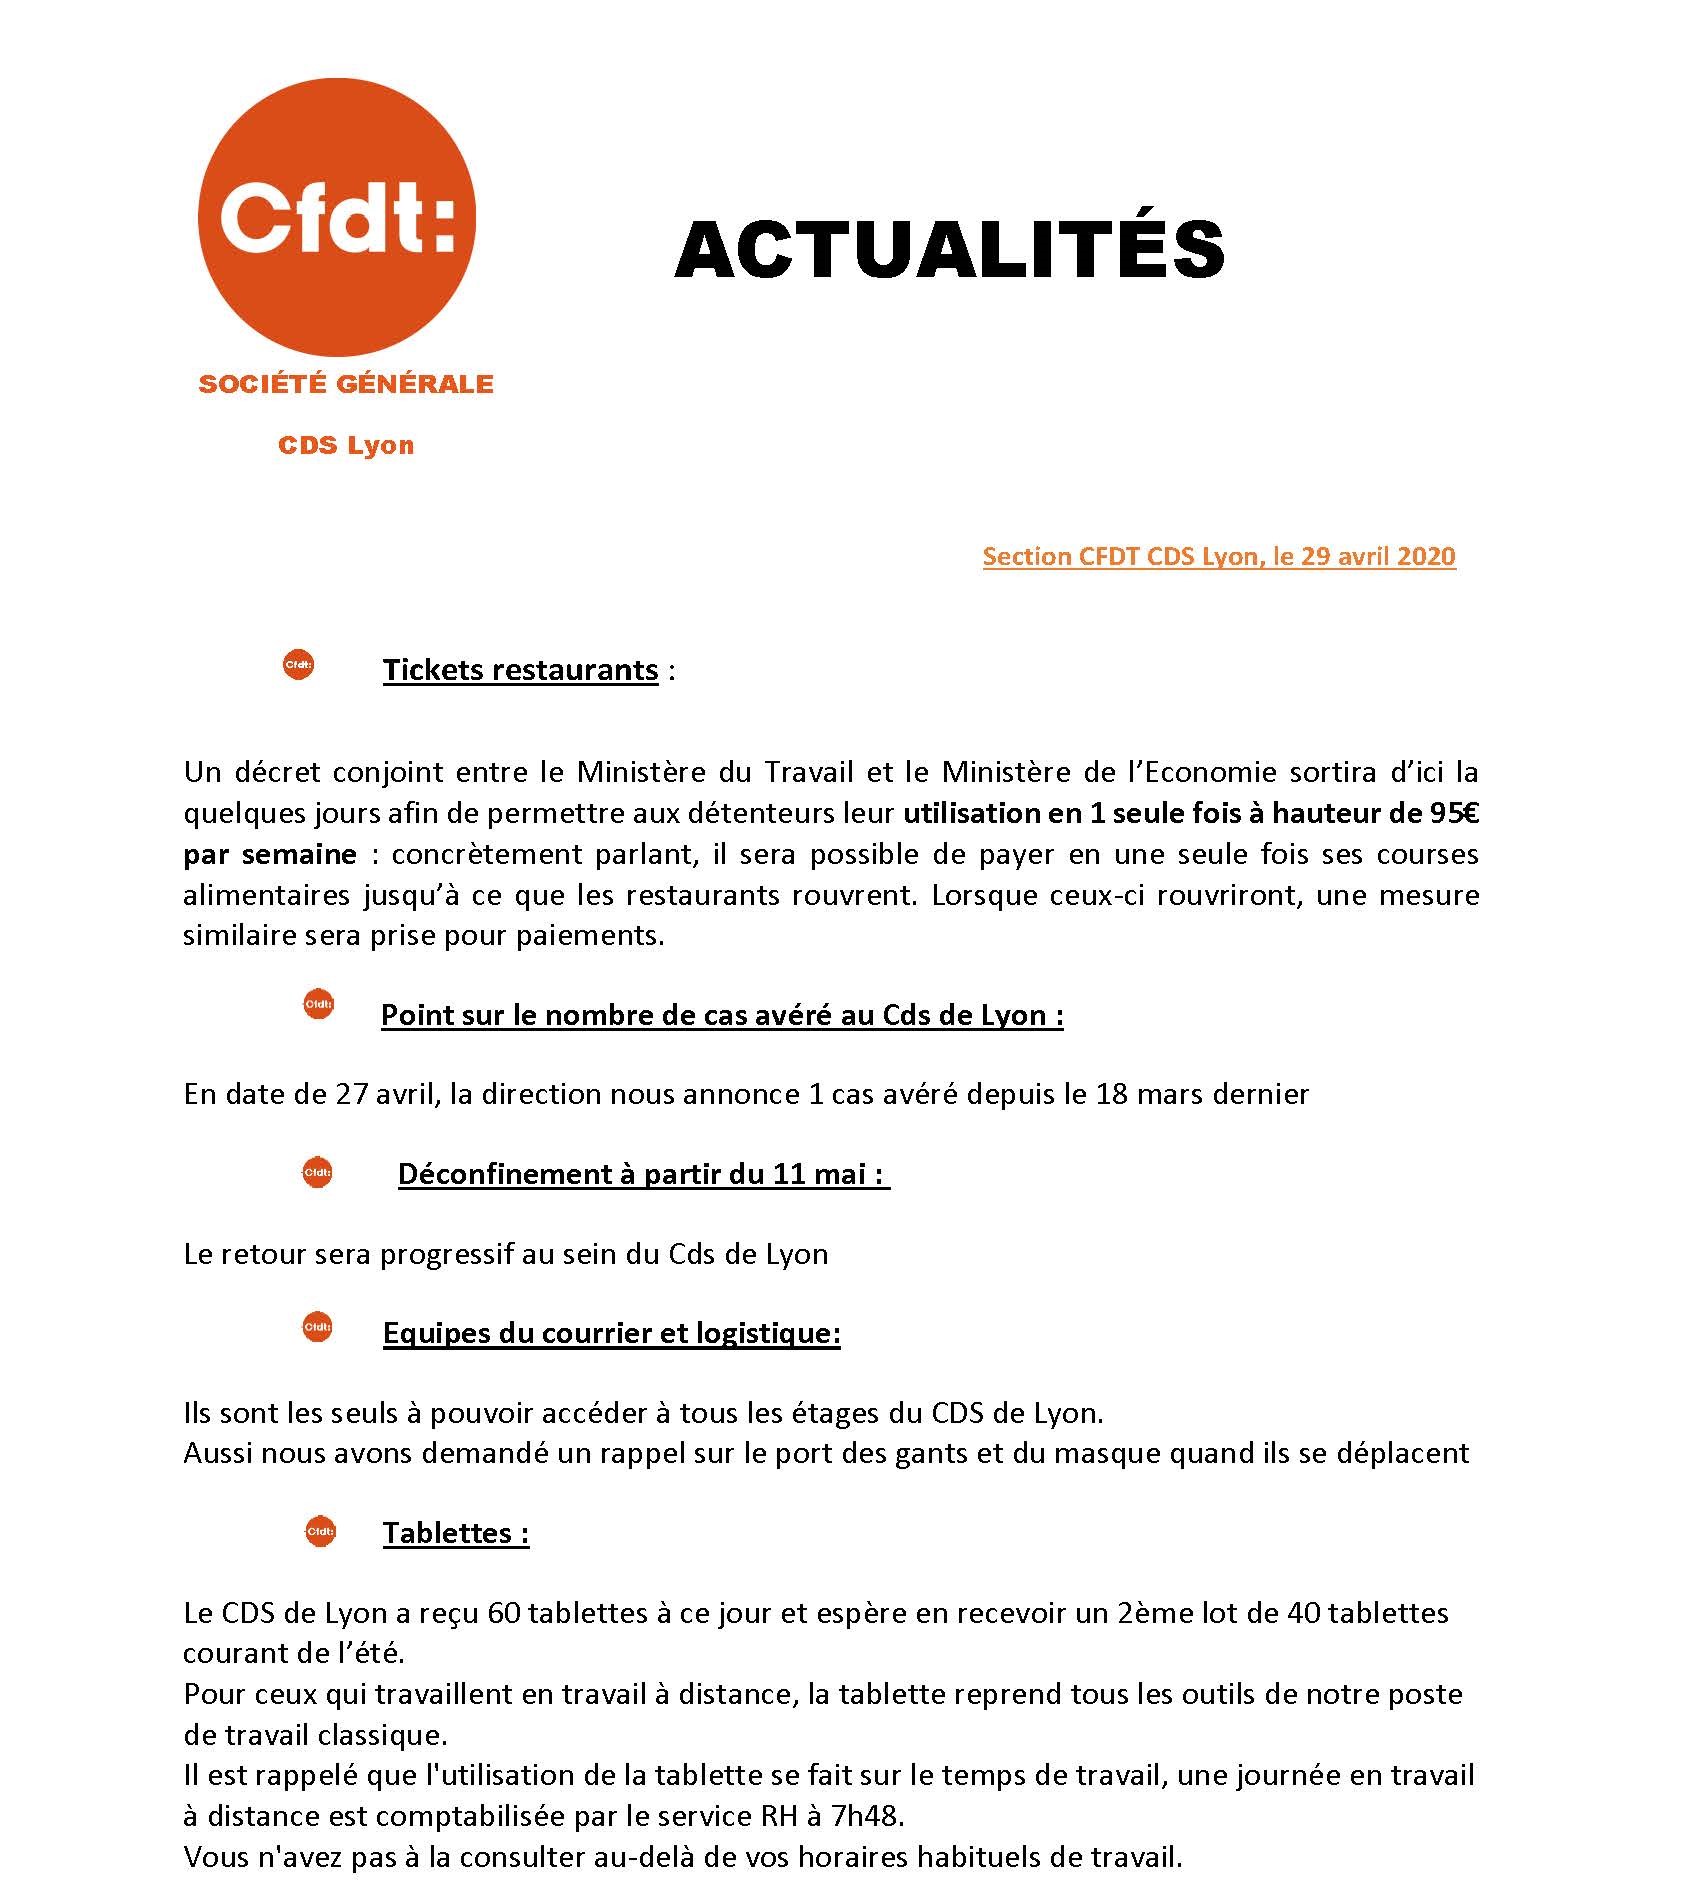 CFDT-SG ACTUALITES AU CDS DE LYON